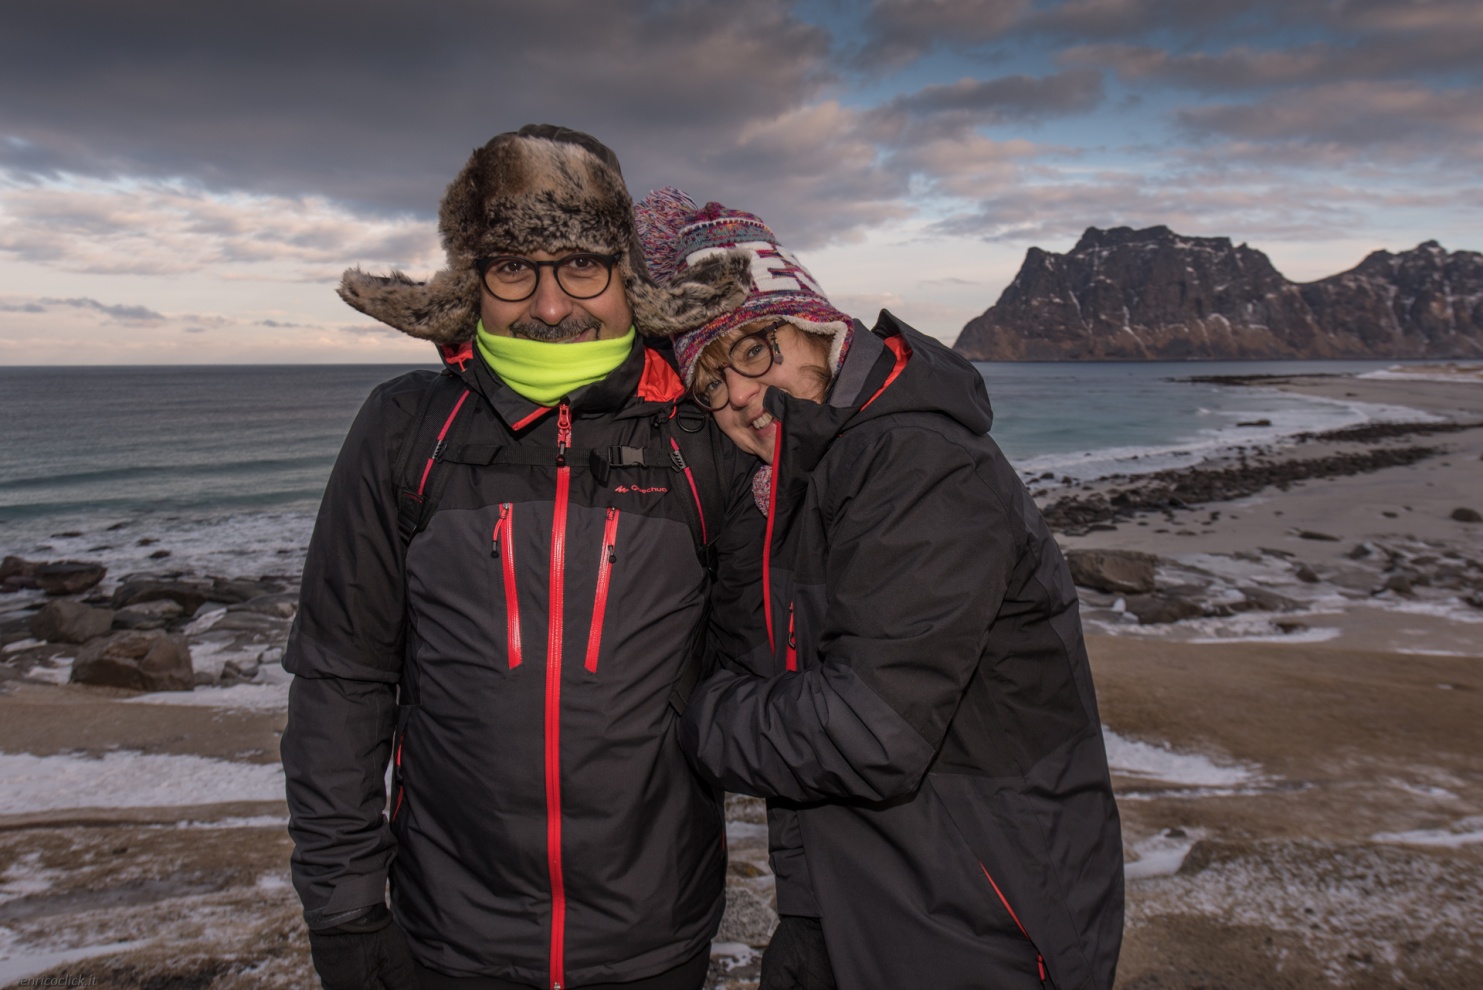 Norvegia Isole Lofoten - Fotografi in azione